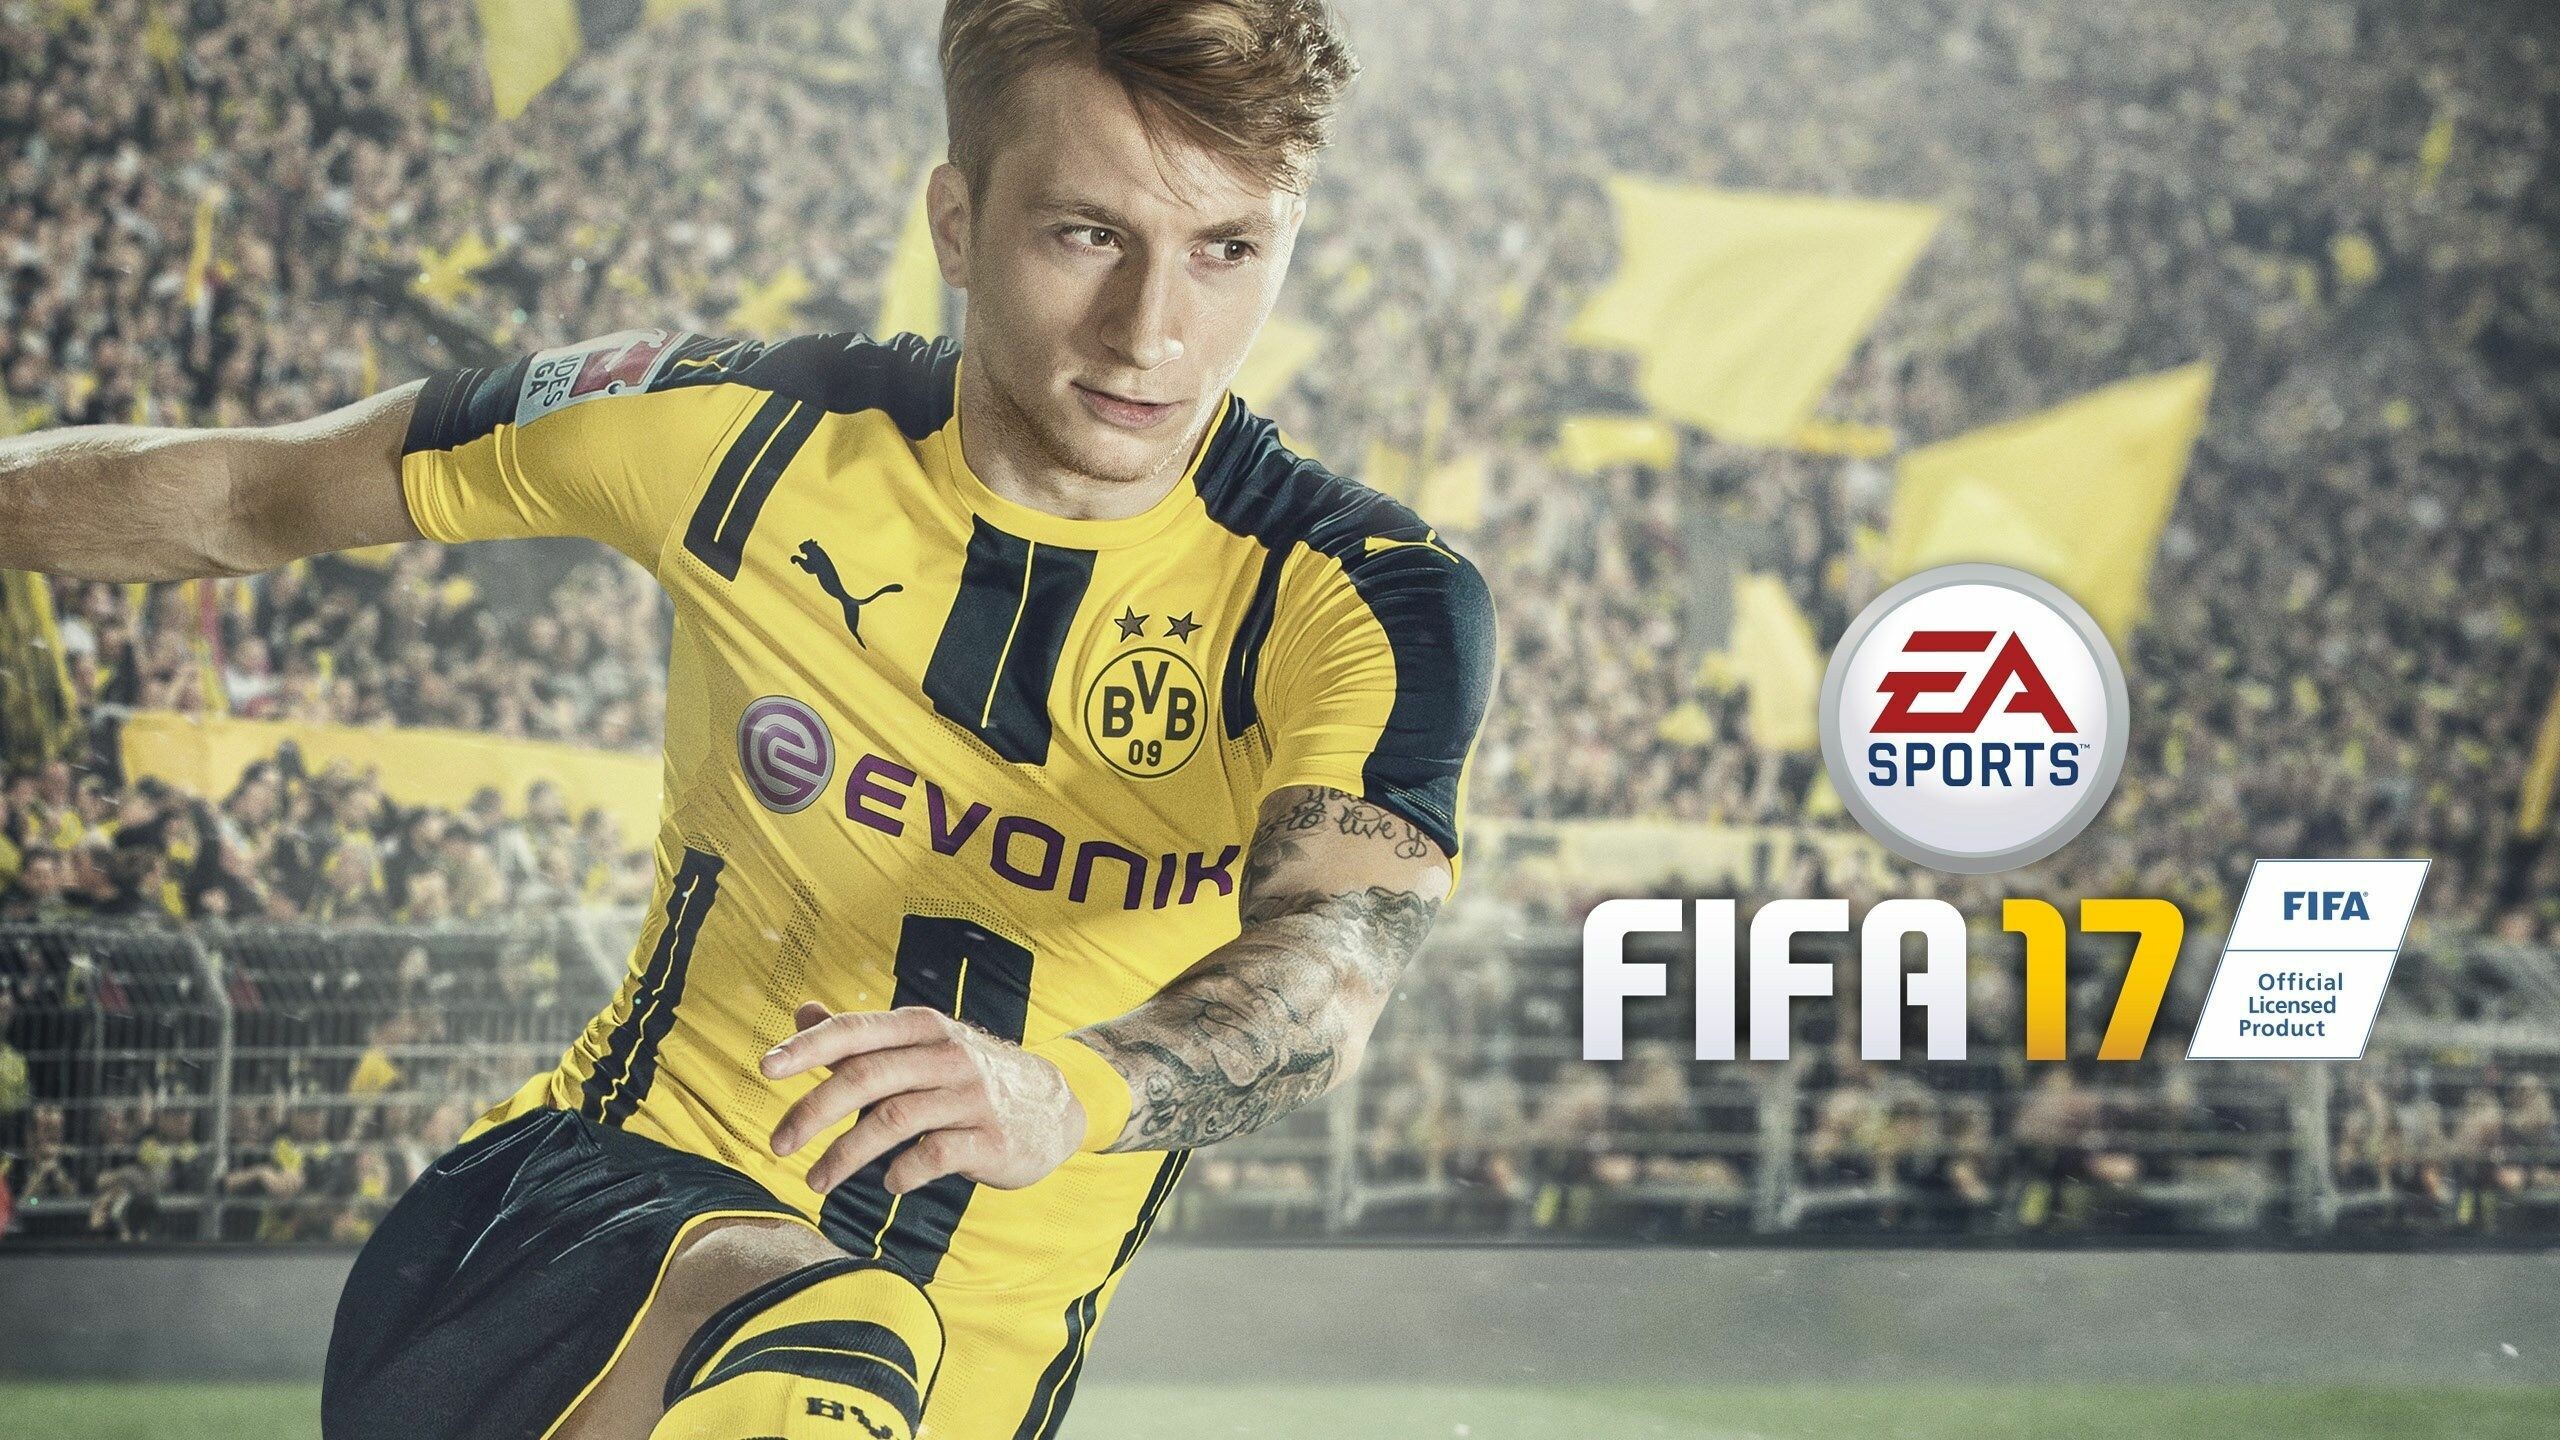 FIFA: Cover art featuring Borussia Dortmund's Marco Reus, EA Sports. 2560x1440 HD Wallpaper.